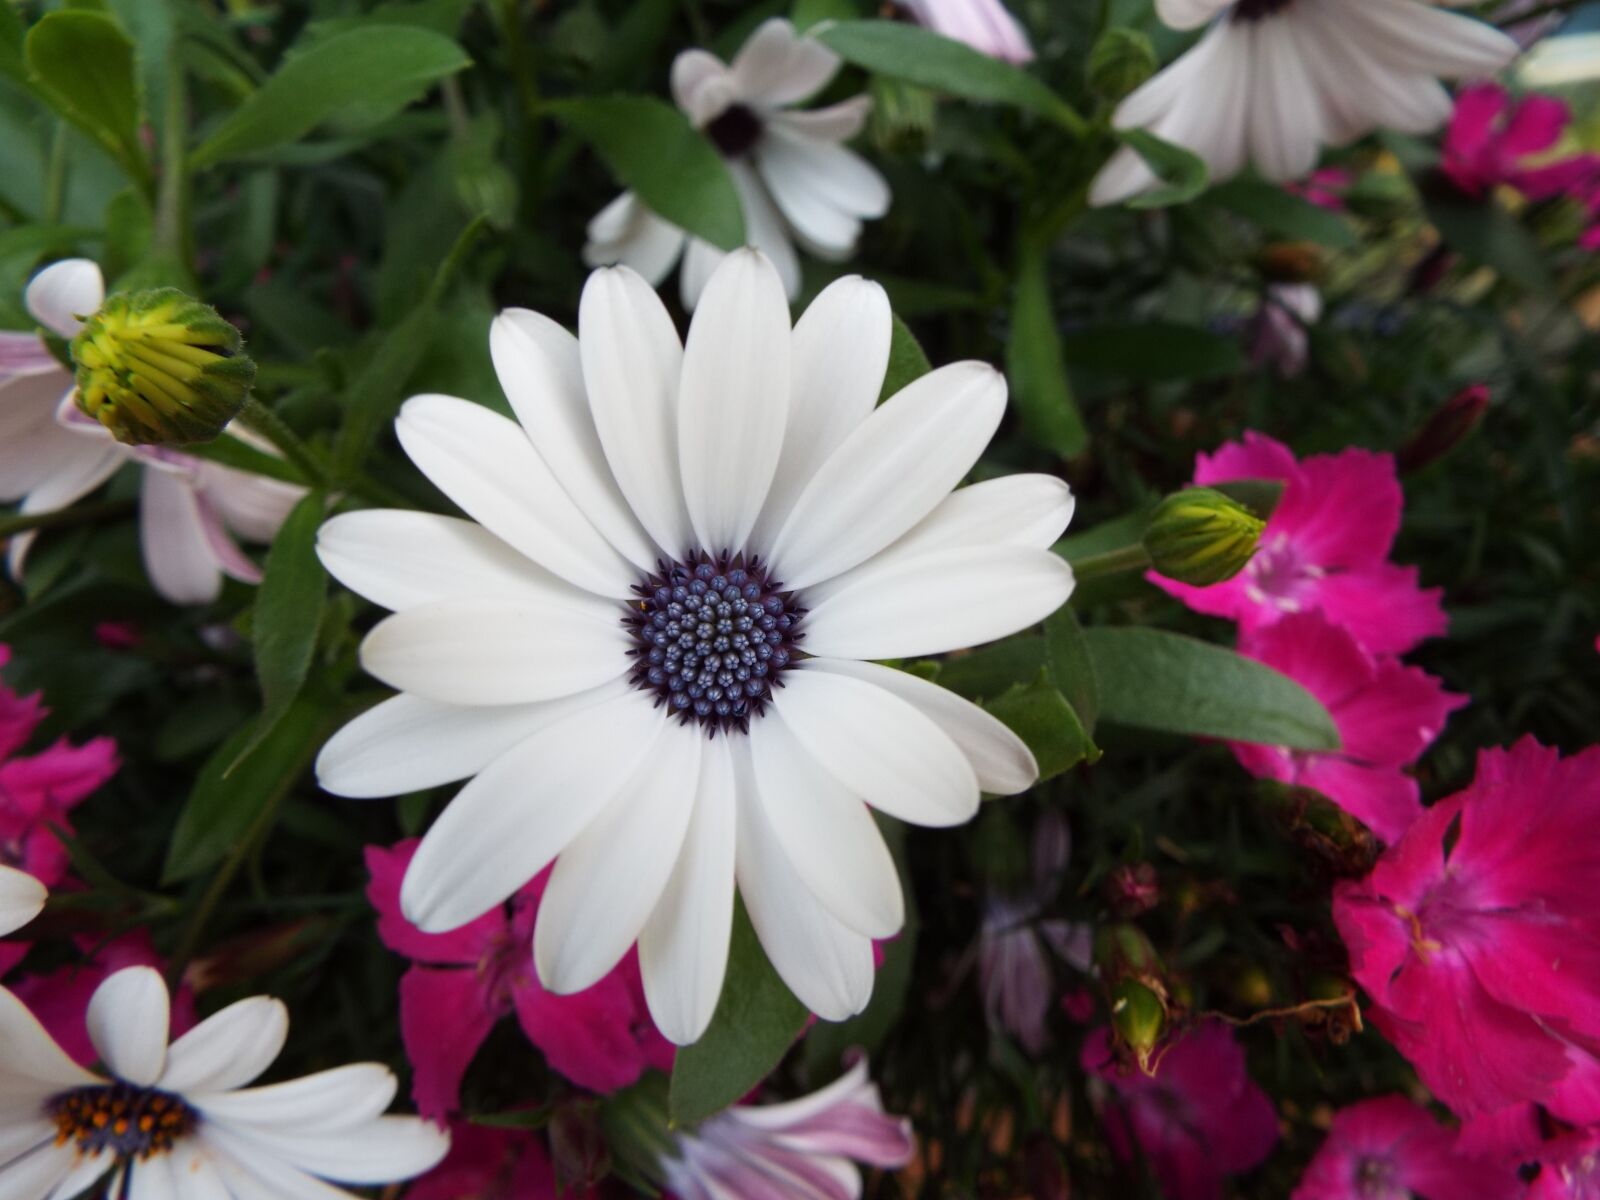 Fujifilm FinePix S9800 sample photo. Flowers, garden, a garden photography